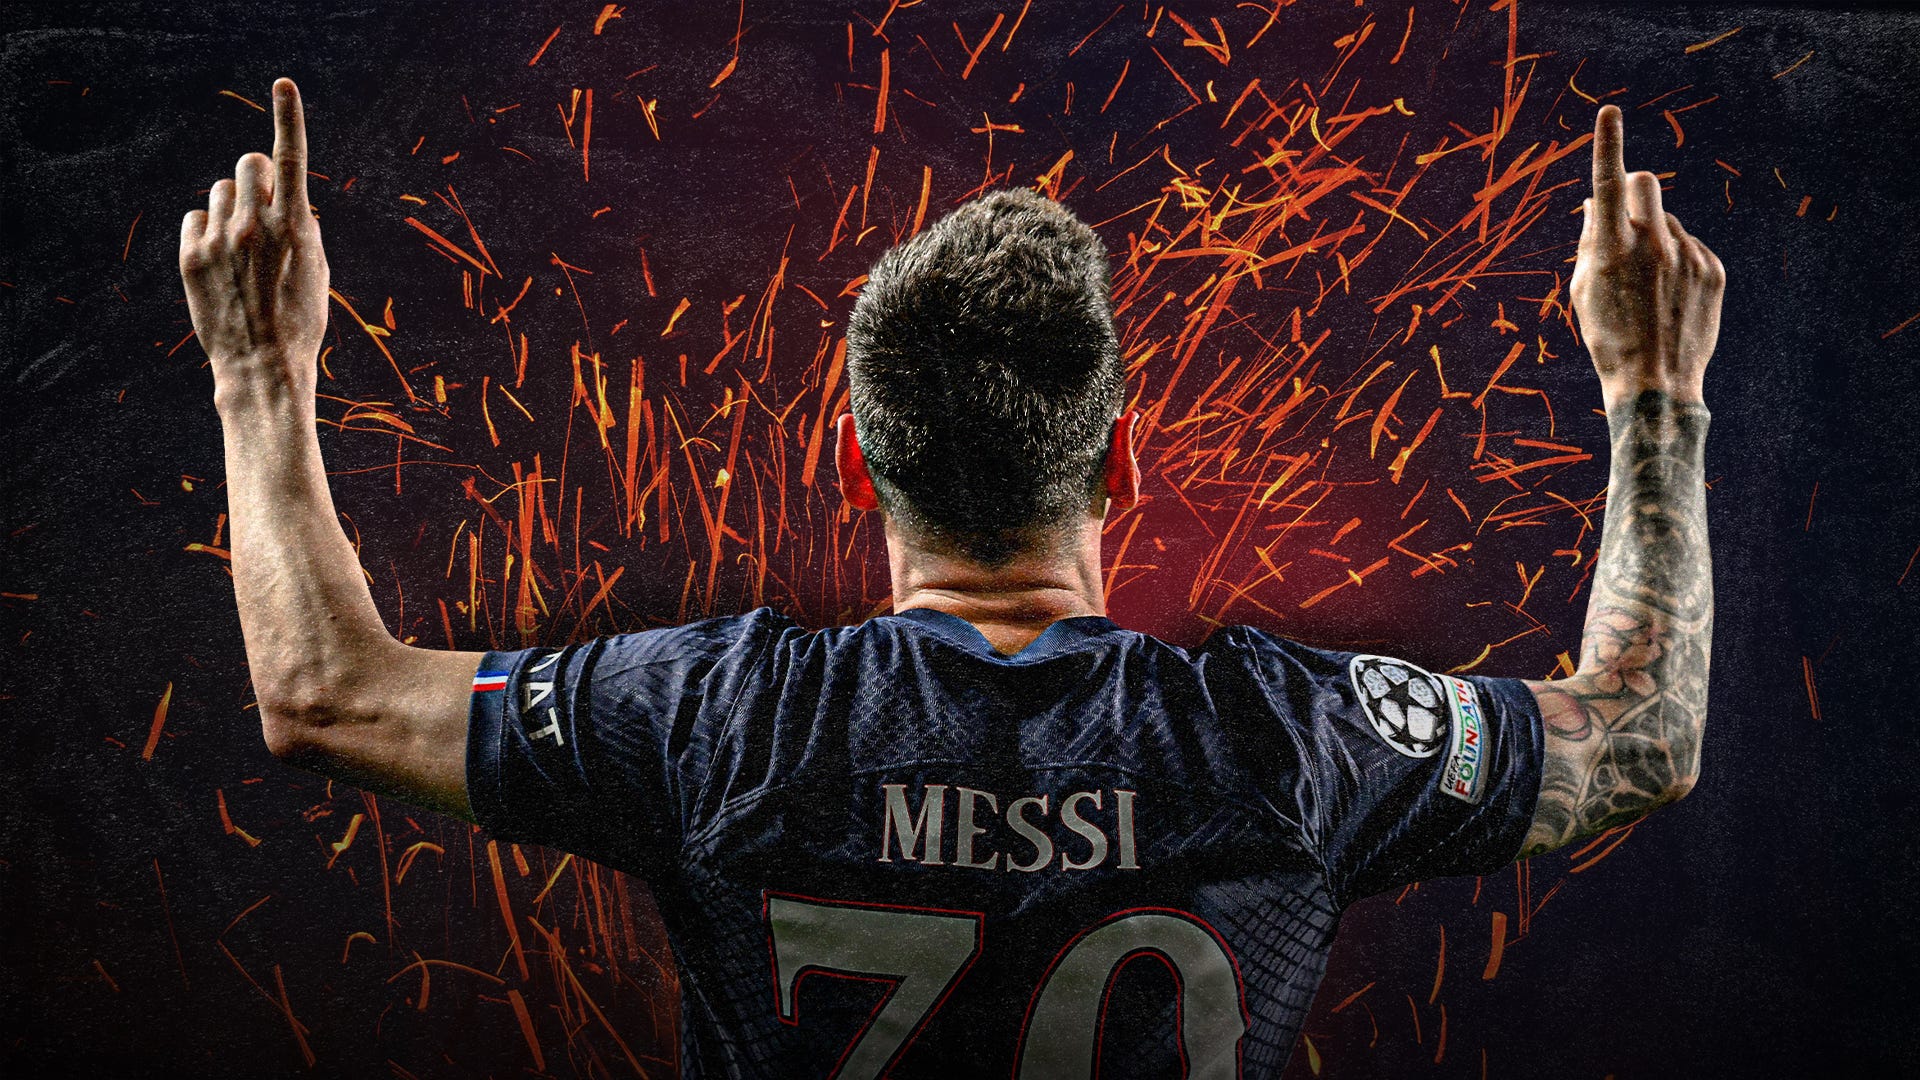 Sự trở lại của Messi với PSG và Barcelona đã gây ngạc nhiên và phấn khích cho các fan hâm mộ của anh ta trên toàn thế giới. Hãy cùng nhau xem qua hình ảnh của anh ta khi đang khoác áo hai CLB lừng danh này và cảm nhận động lực mới cho sự nghiệp bóng đá của bạn.